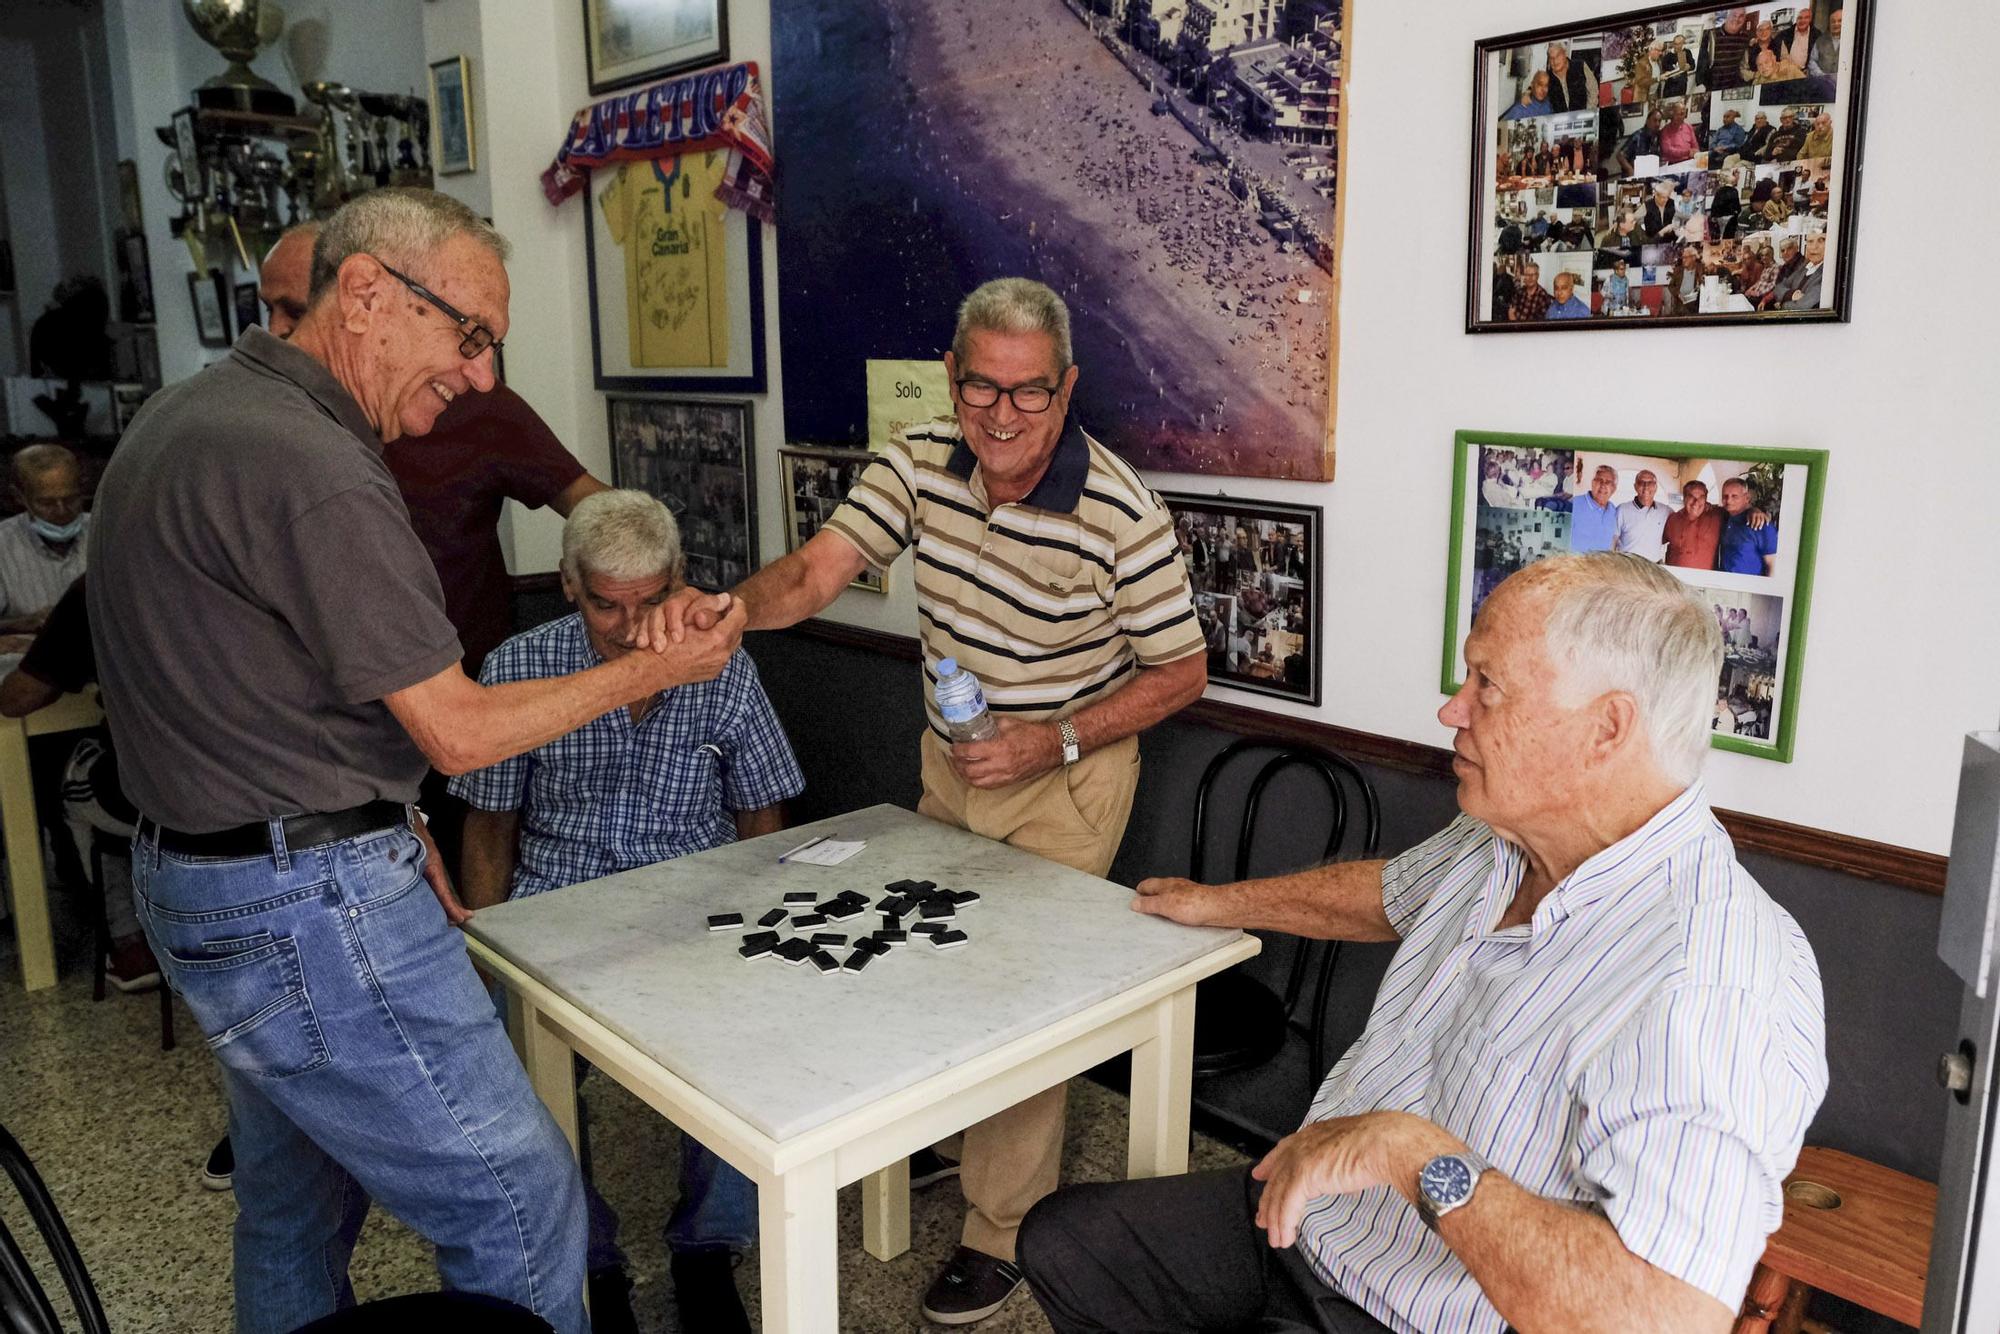 Ex de la UD (Germán Dévora, Paco Castellano, Páez y Hernández) se reúnen en un local para jugar cartas y contar batallas